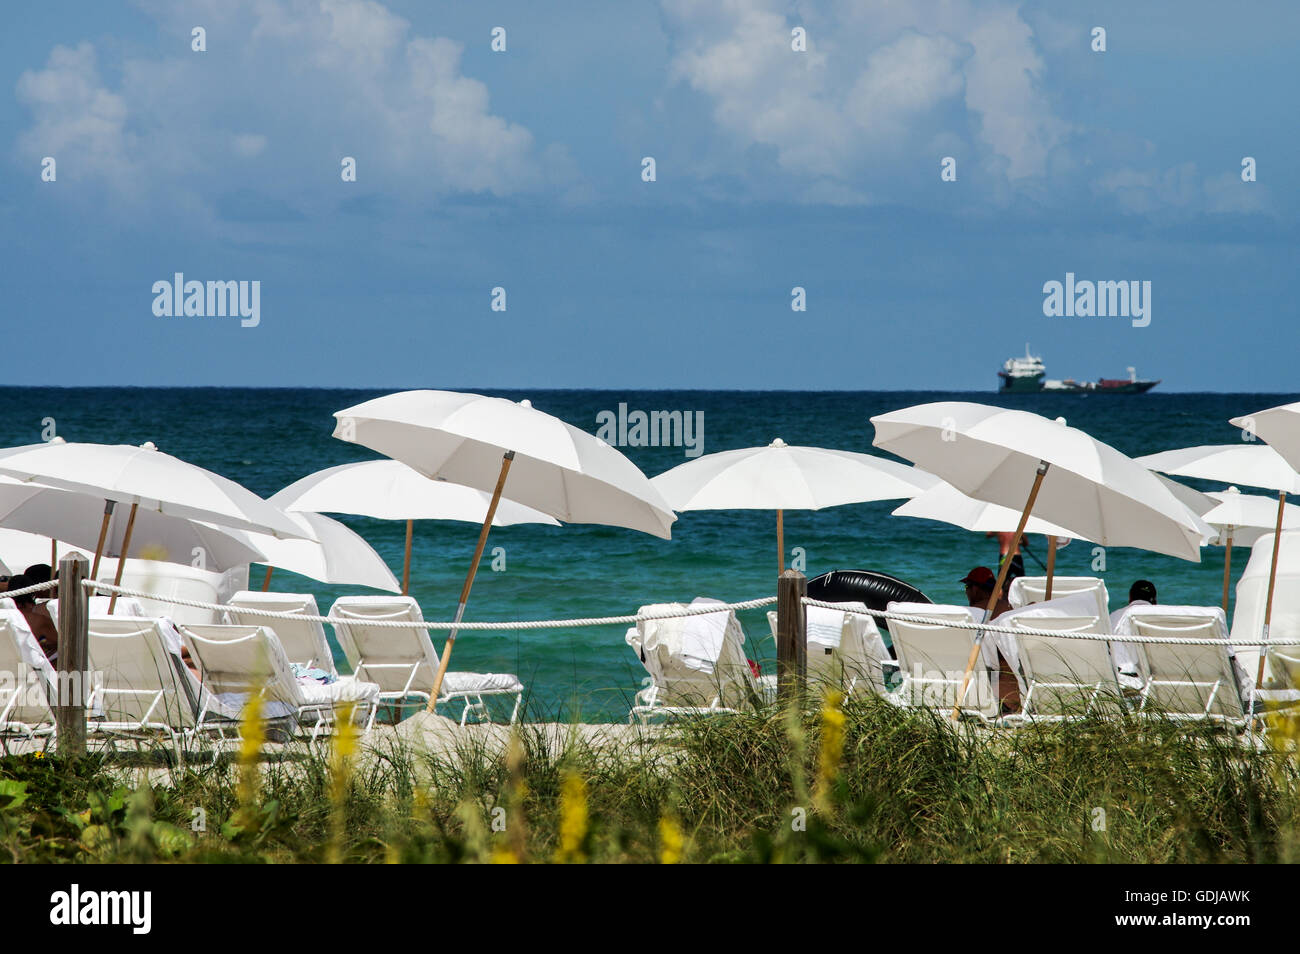 Sea of white umbrellas at South Beach, Miami Stock Photo